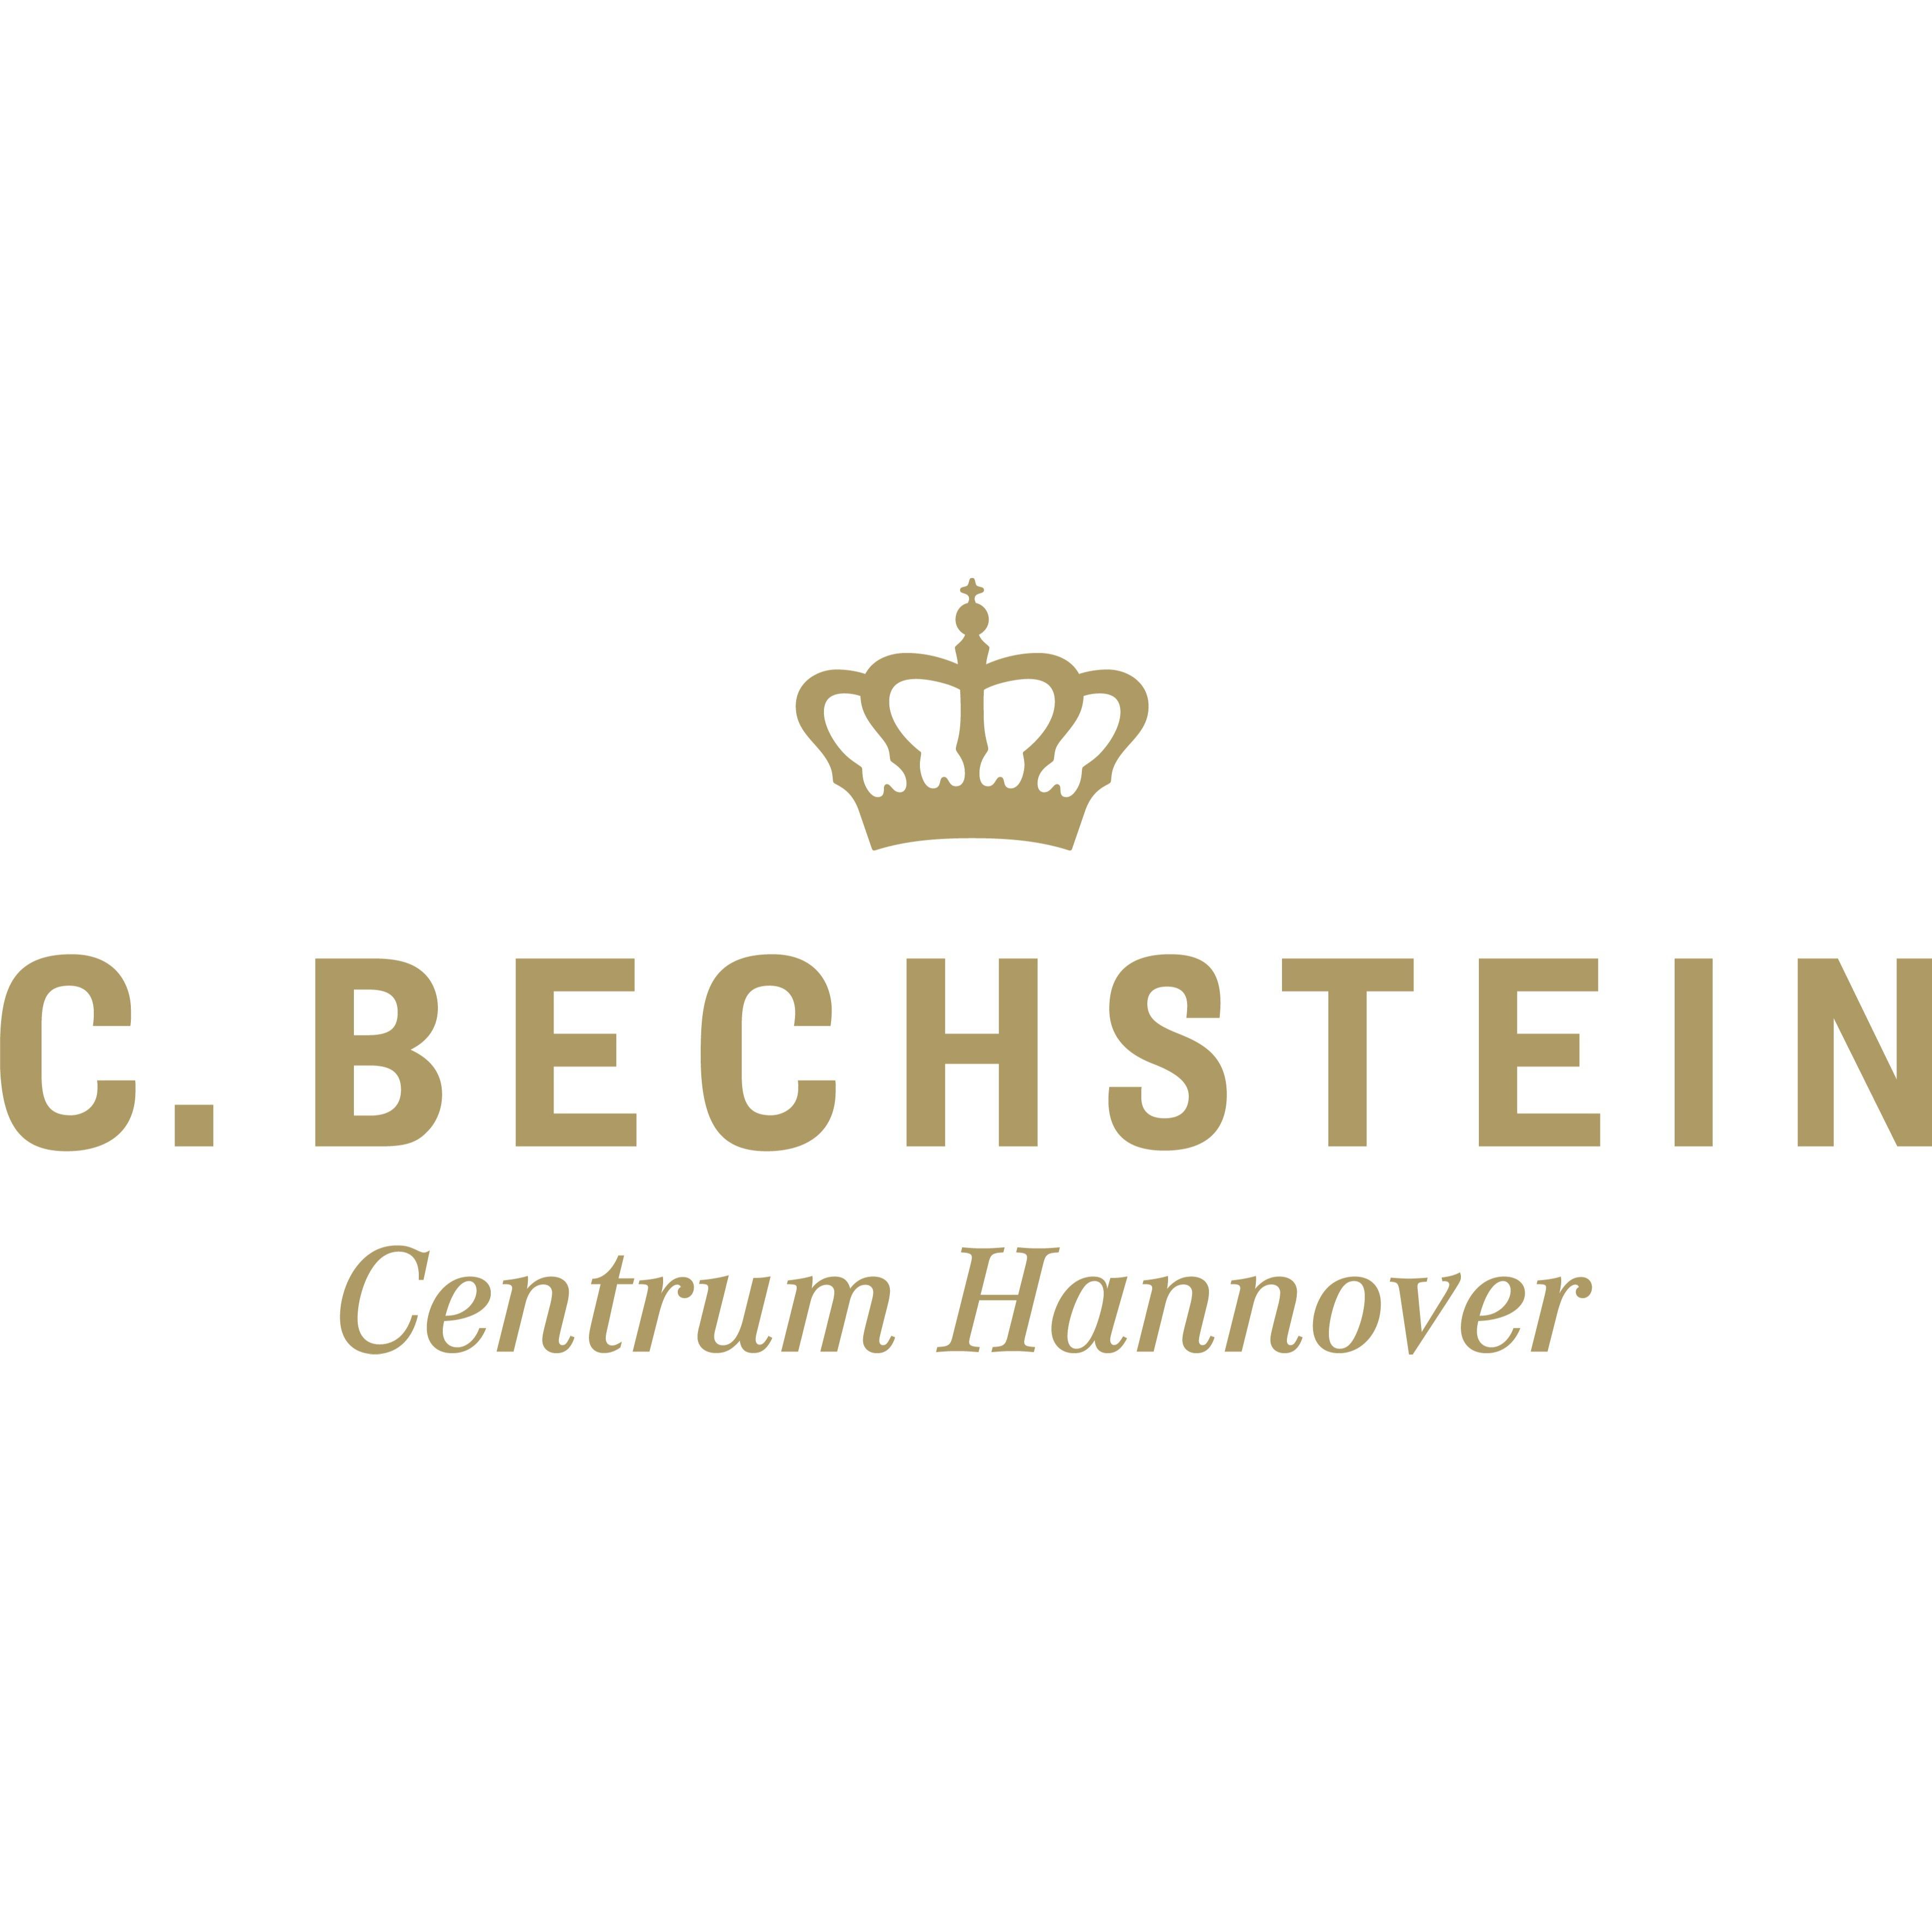 Das C. Bechstein Centrum Hannover - Bei uns finden Sie eine große Auswahl an Klavieren, Flügeln und Digitalpianos unserer verschiedenen Marken sowie hochwertige Gebrauchtinstrumente - geeignet für jeden Anspruch, jeden Geschmack und für jede Preislage.